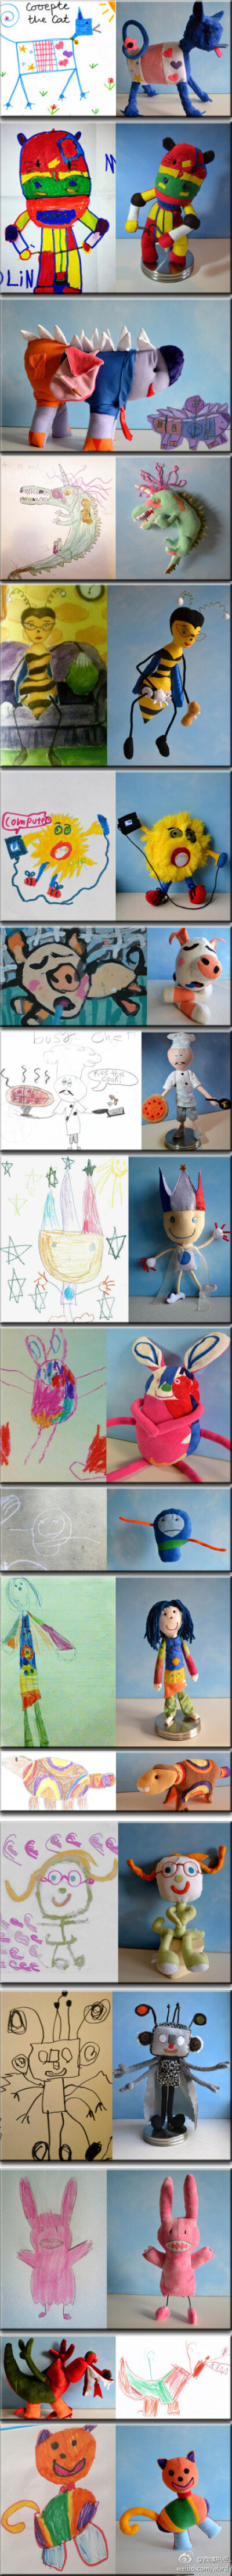 @微博热点：一位母亲把她四岁儿子的涂鸦做成长毛绒玩具。好有爱啊~